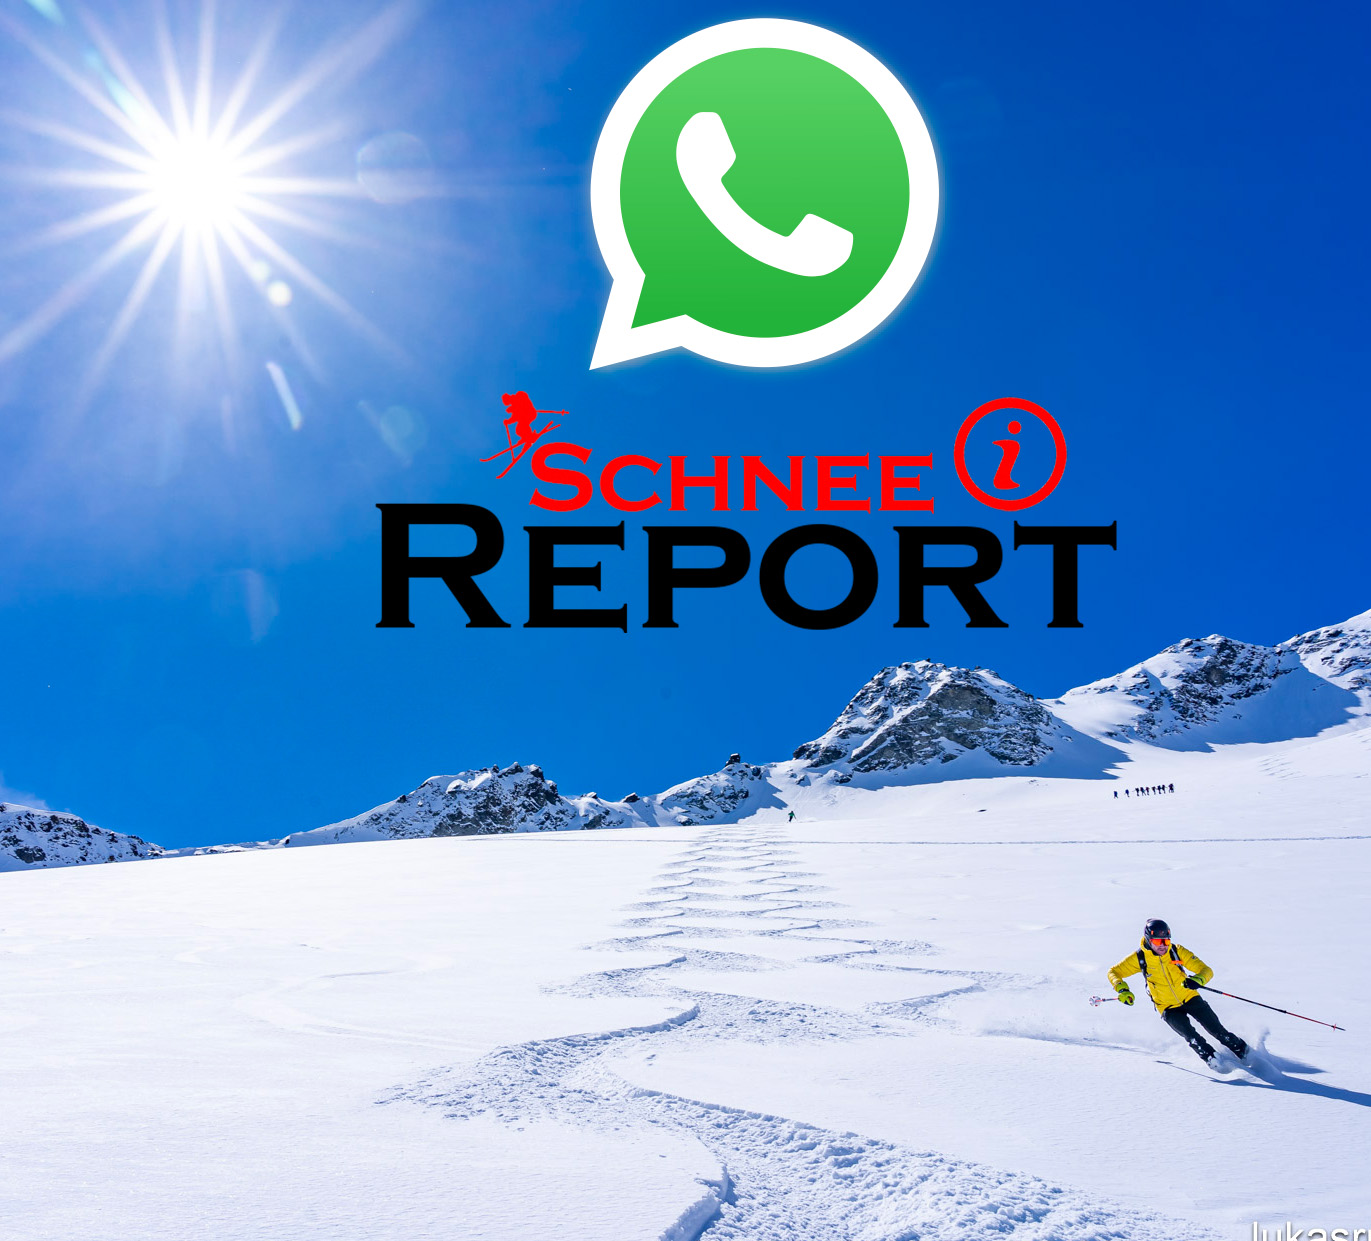 SchneeReport als WhatsApp-Kanal – gleich abonnieren immer am aktuellen Stand der Schnee-Lawinensituation in Kühtai und im Sellraintal